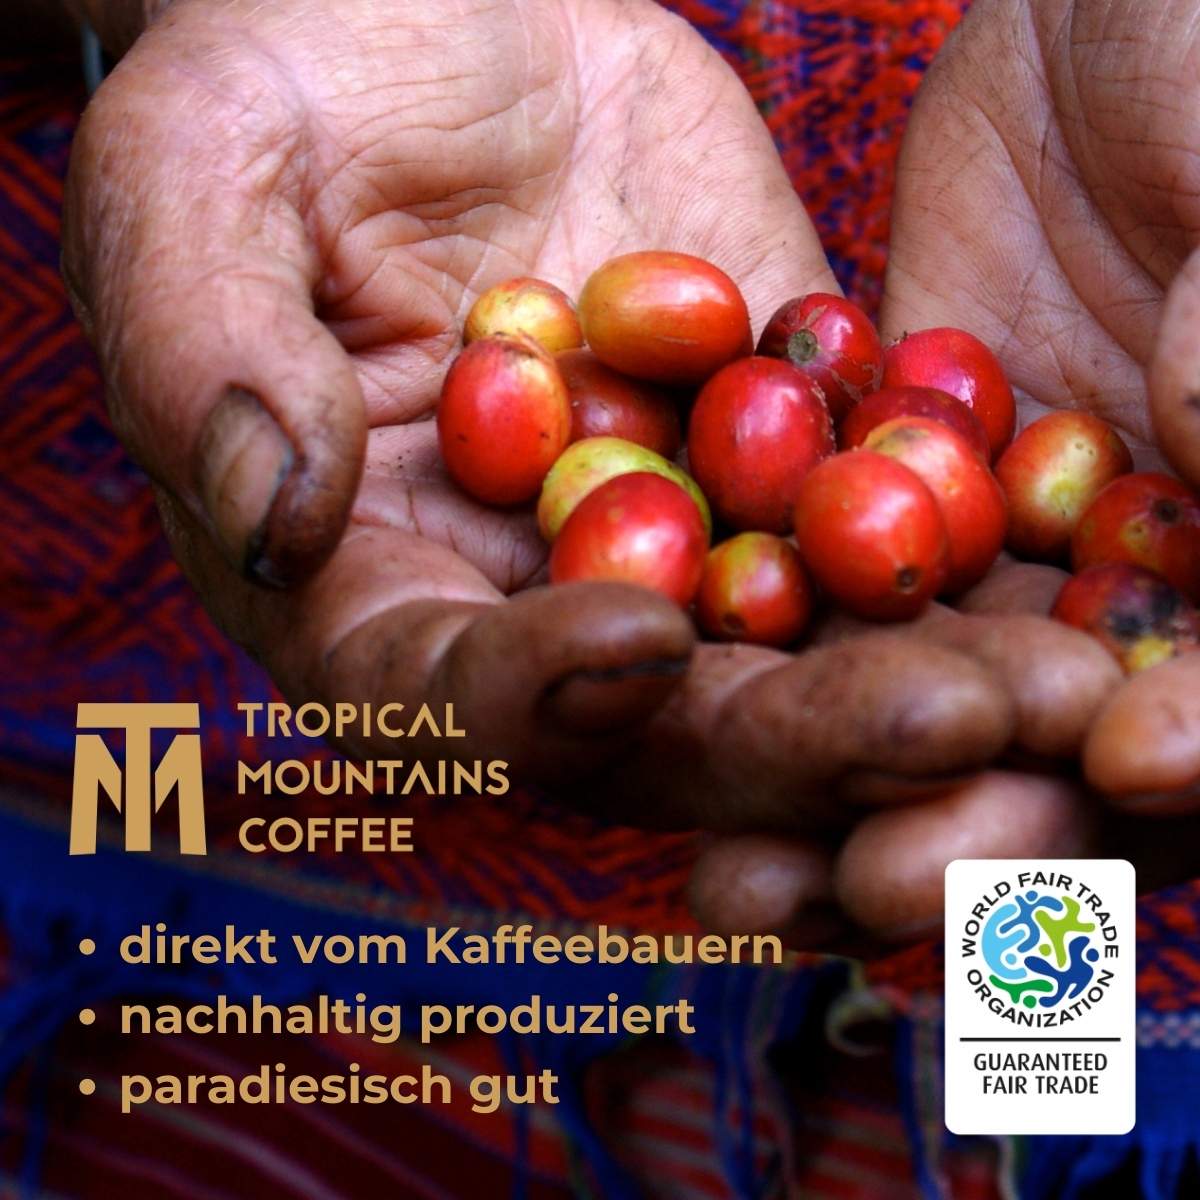 Tropical Mountains Concierto Fair Trade Kaffee 1000g Bohnen